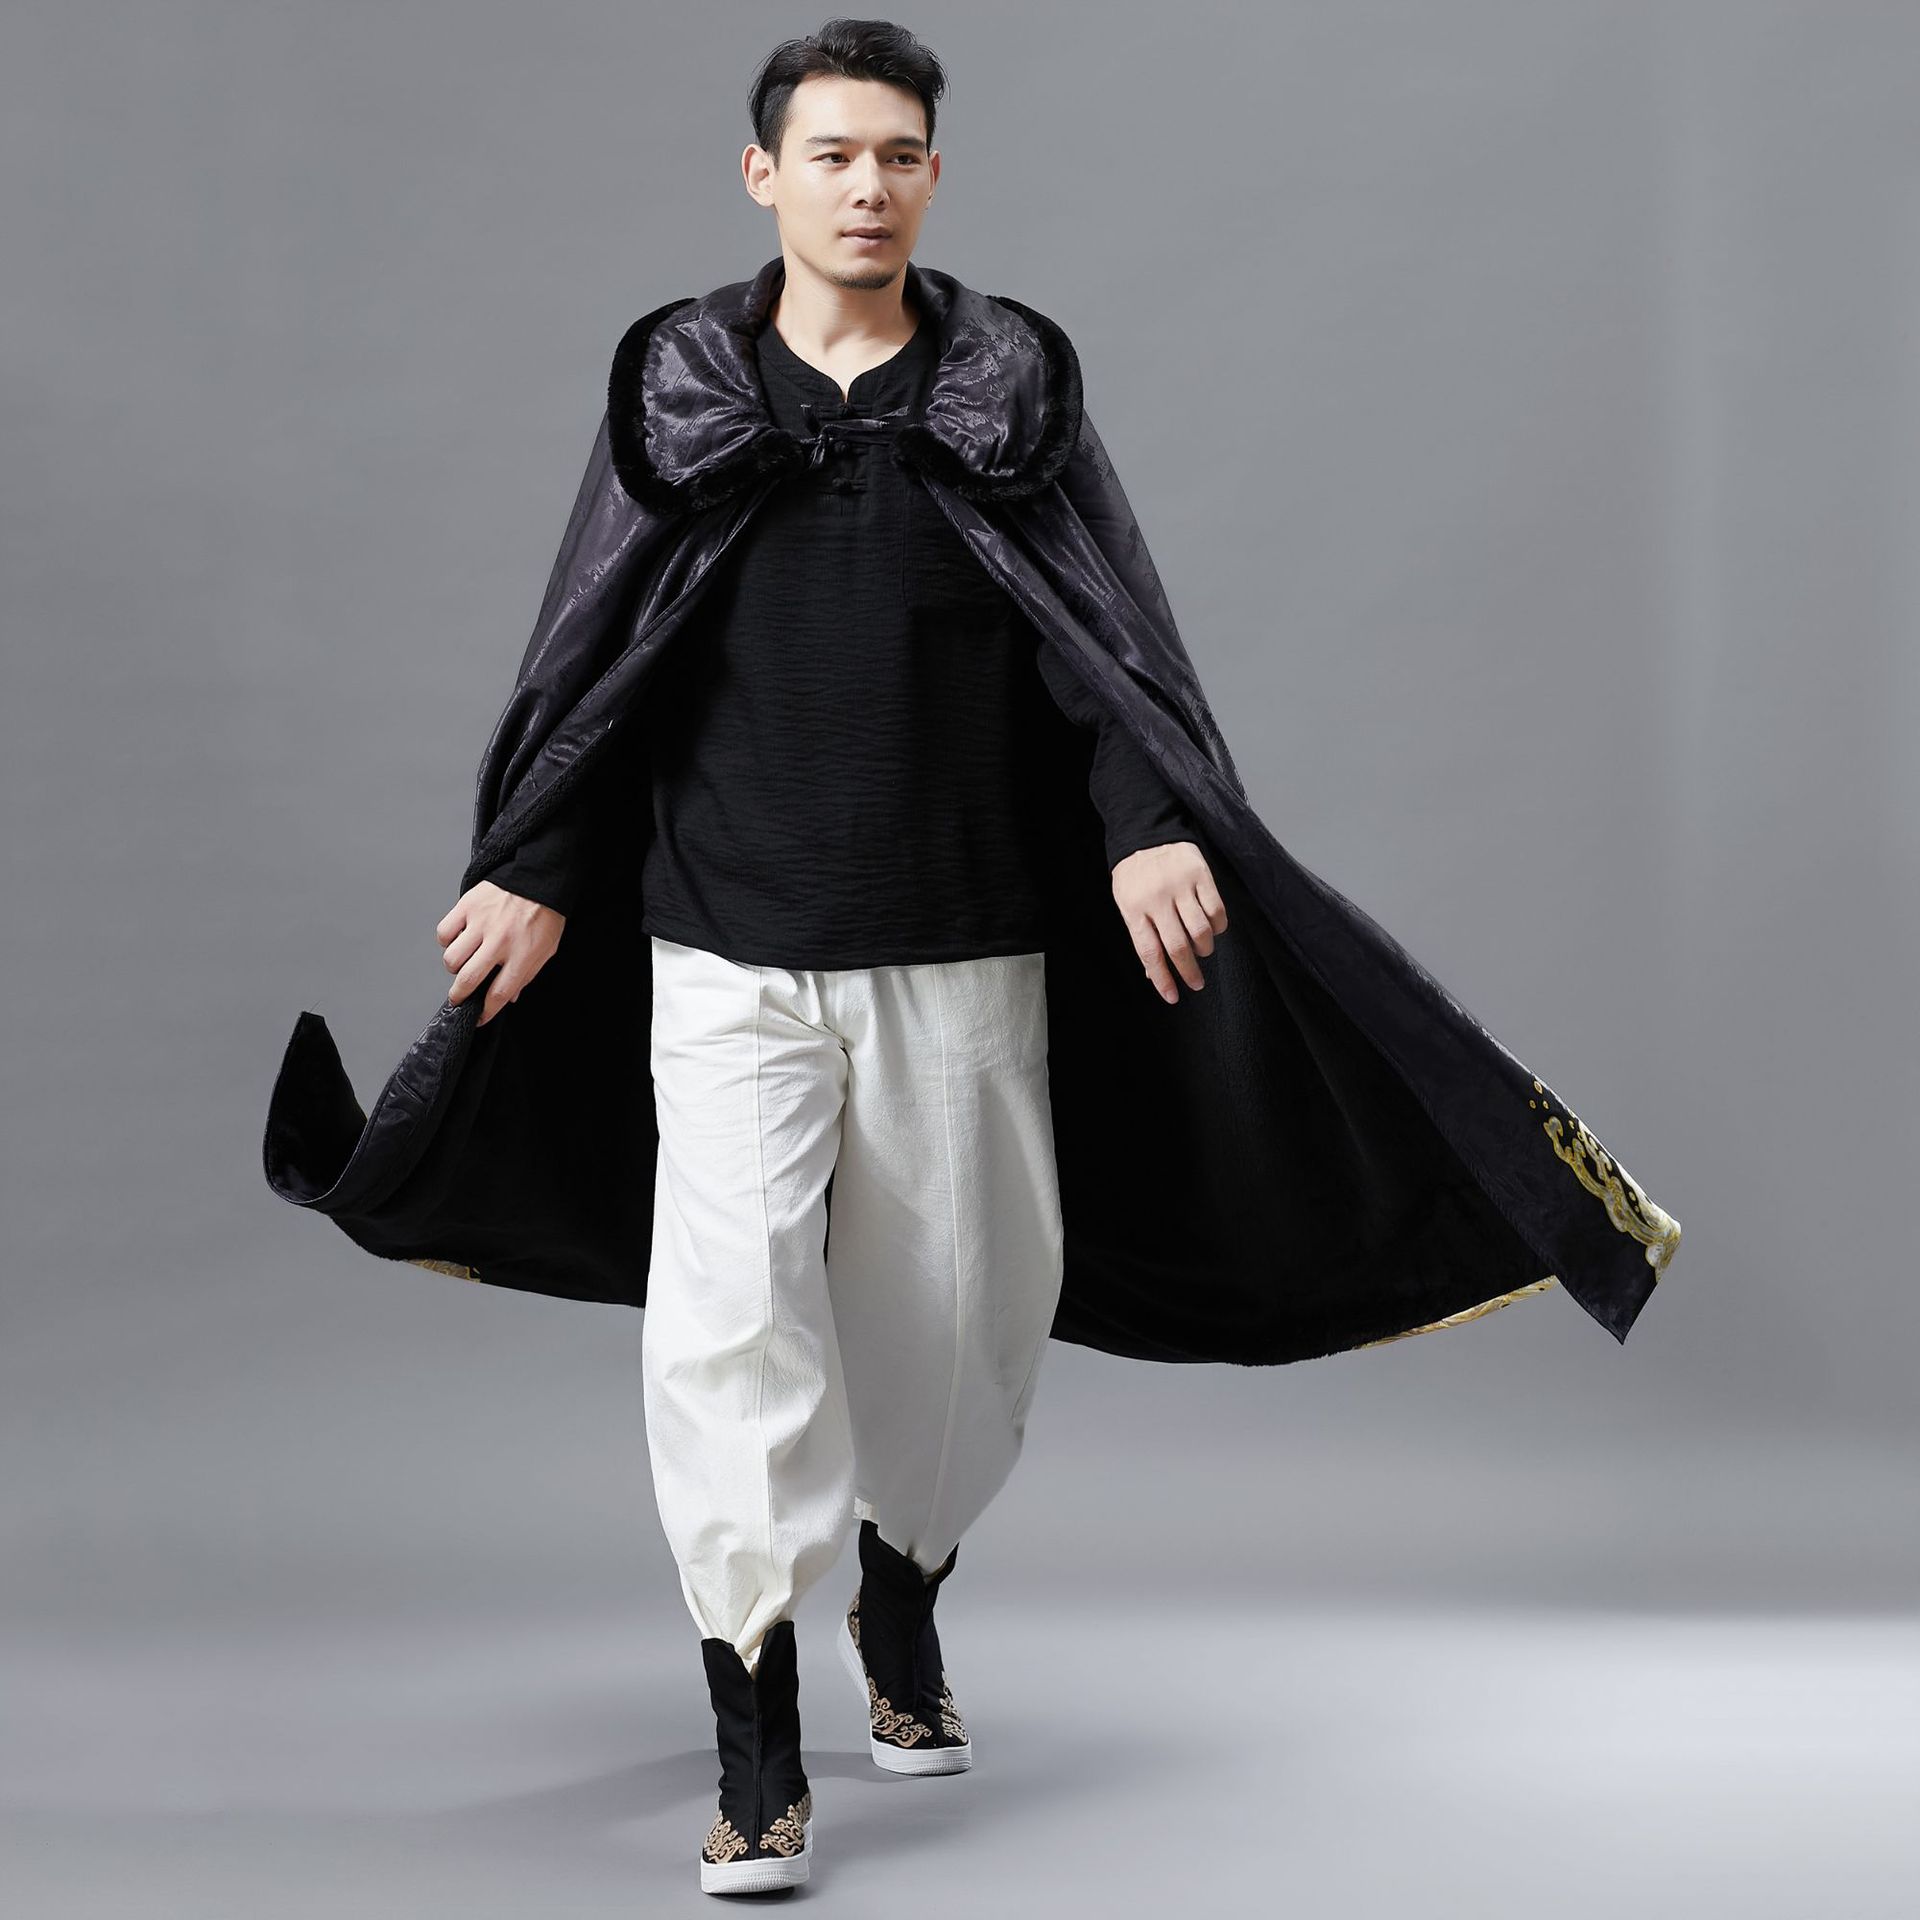 남성용 트렌치 코트 민족 겨울 남성 겉옷 망토 후드 케이프 레트로 패턴 의상 검은 바람막이